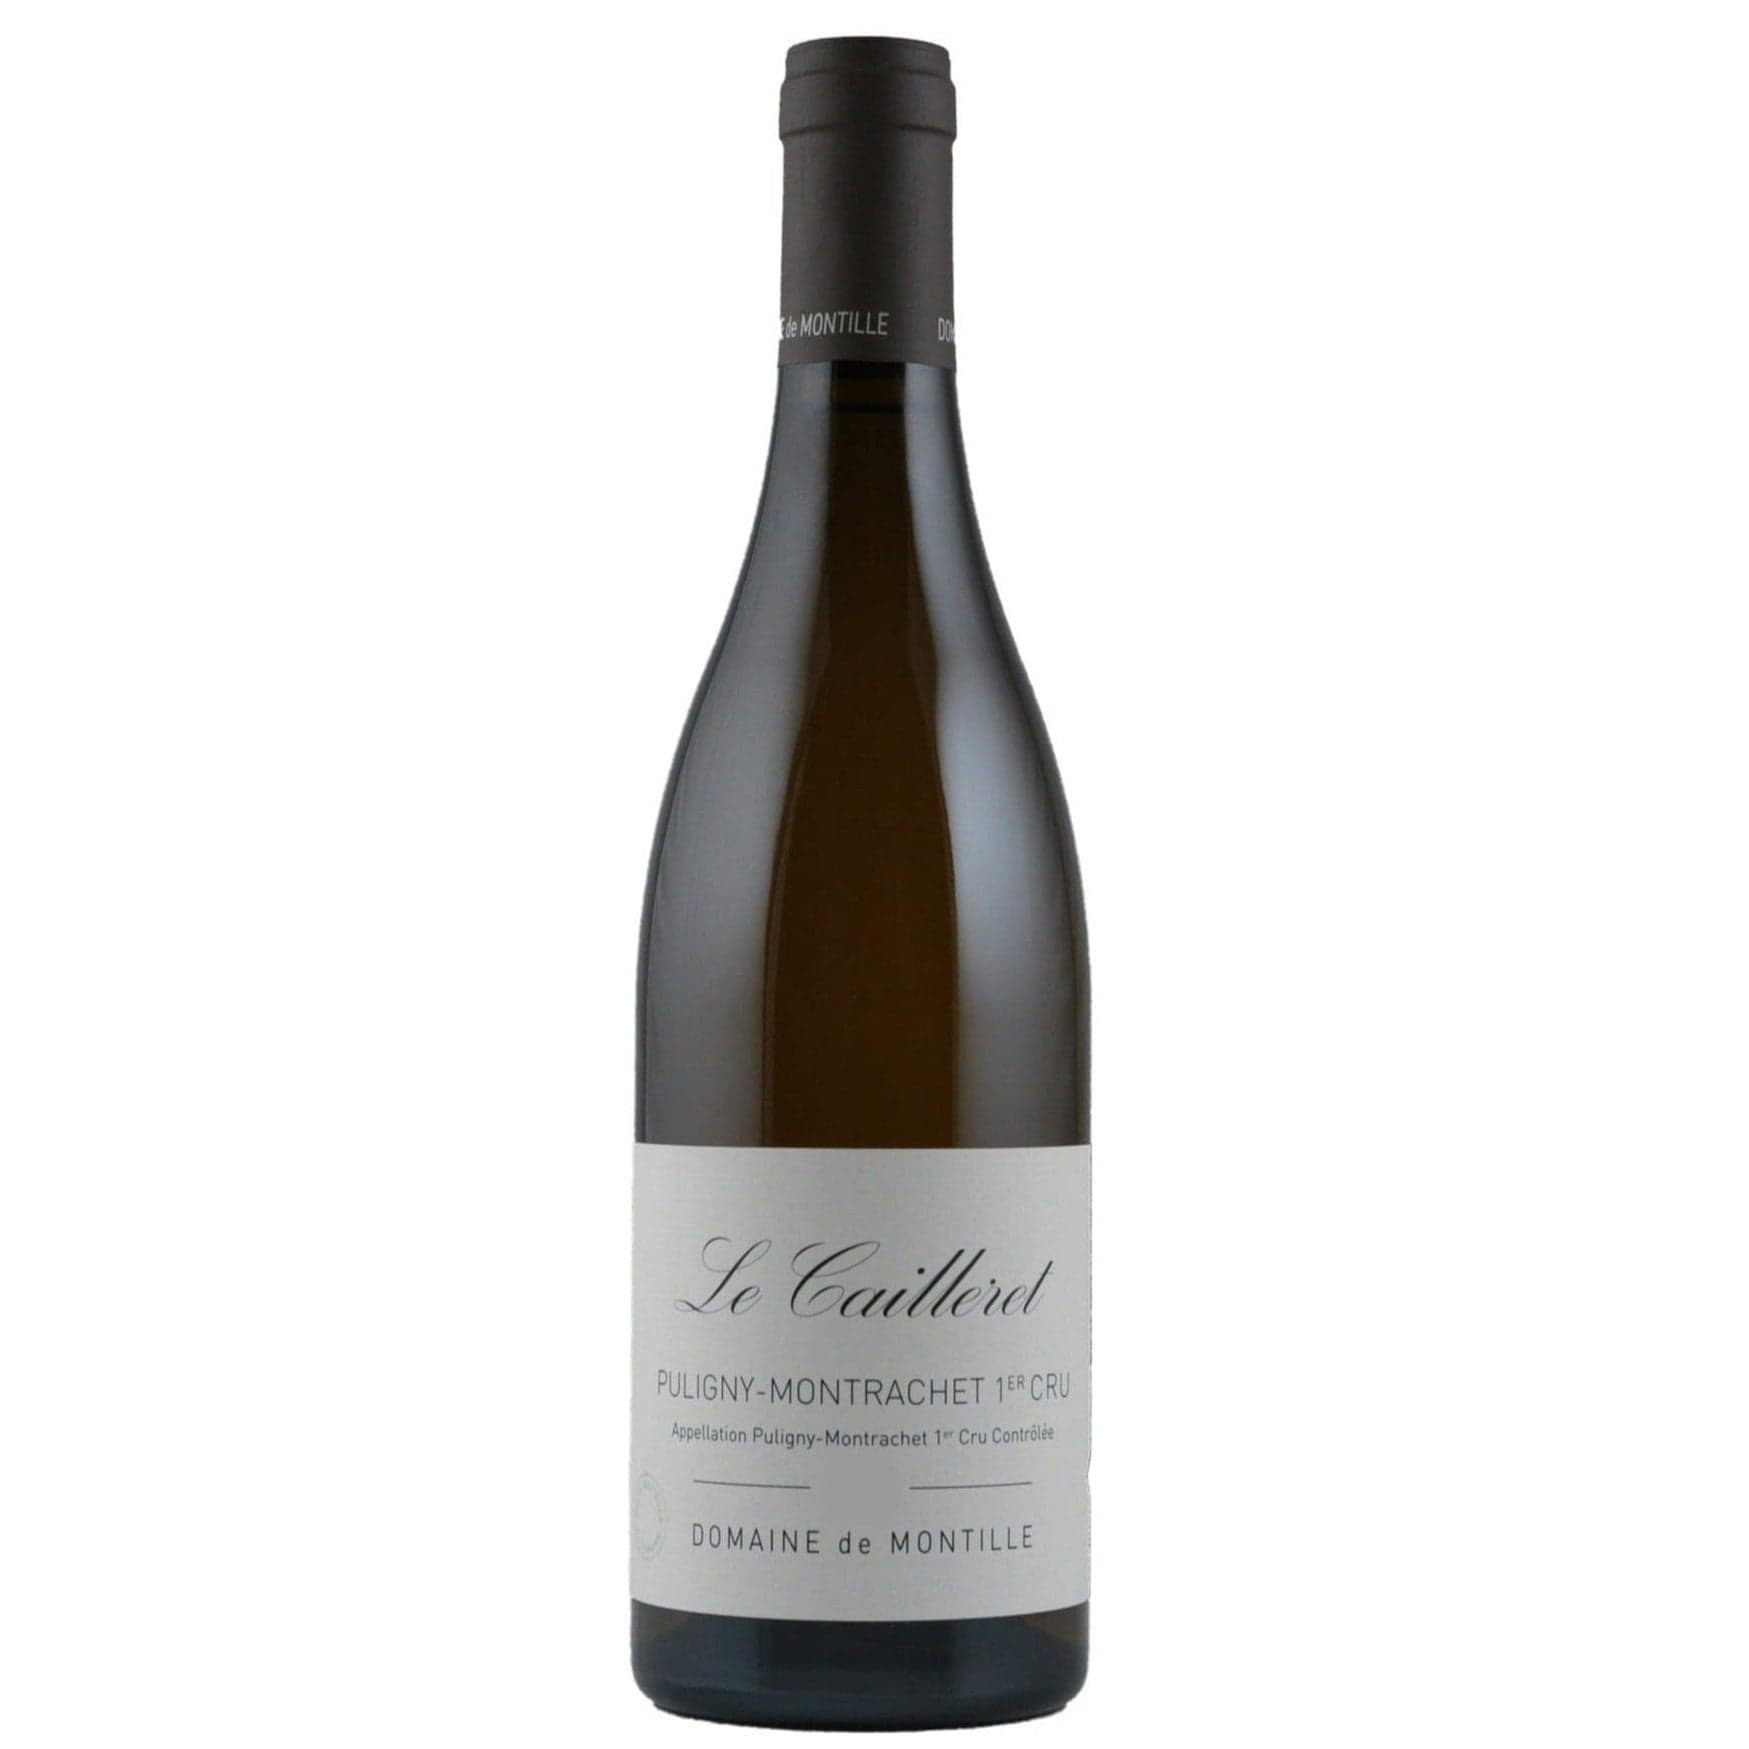 Single bottle of White wine Domaine de Montille,  Le Cailleret Premier Cru, Puligny-Montrachet, 2019 100% Chardonnay